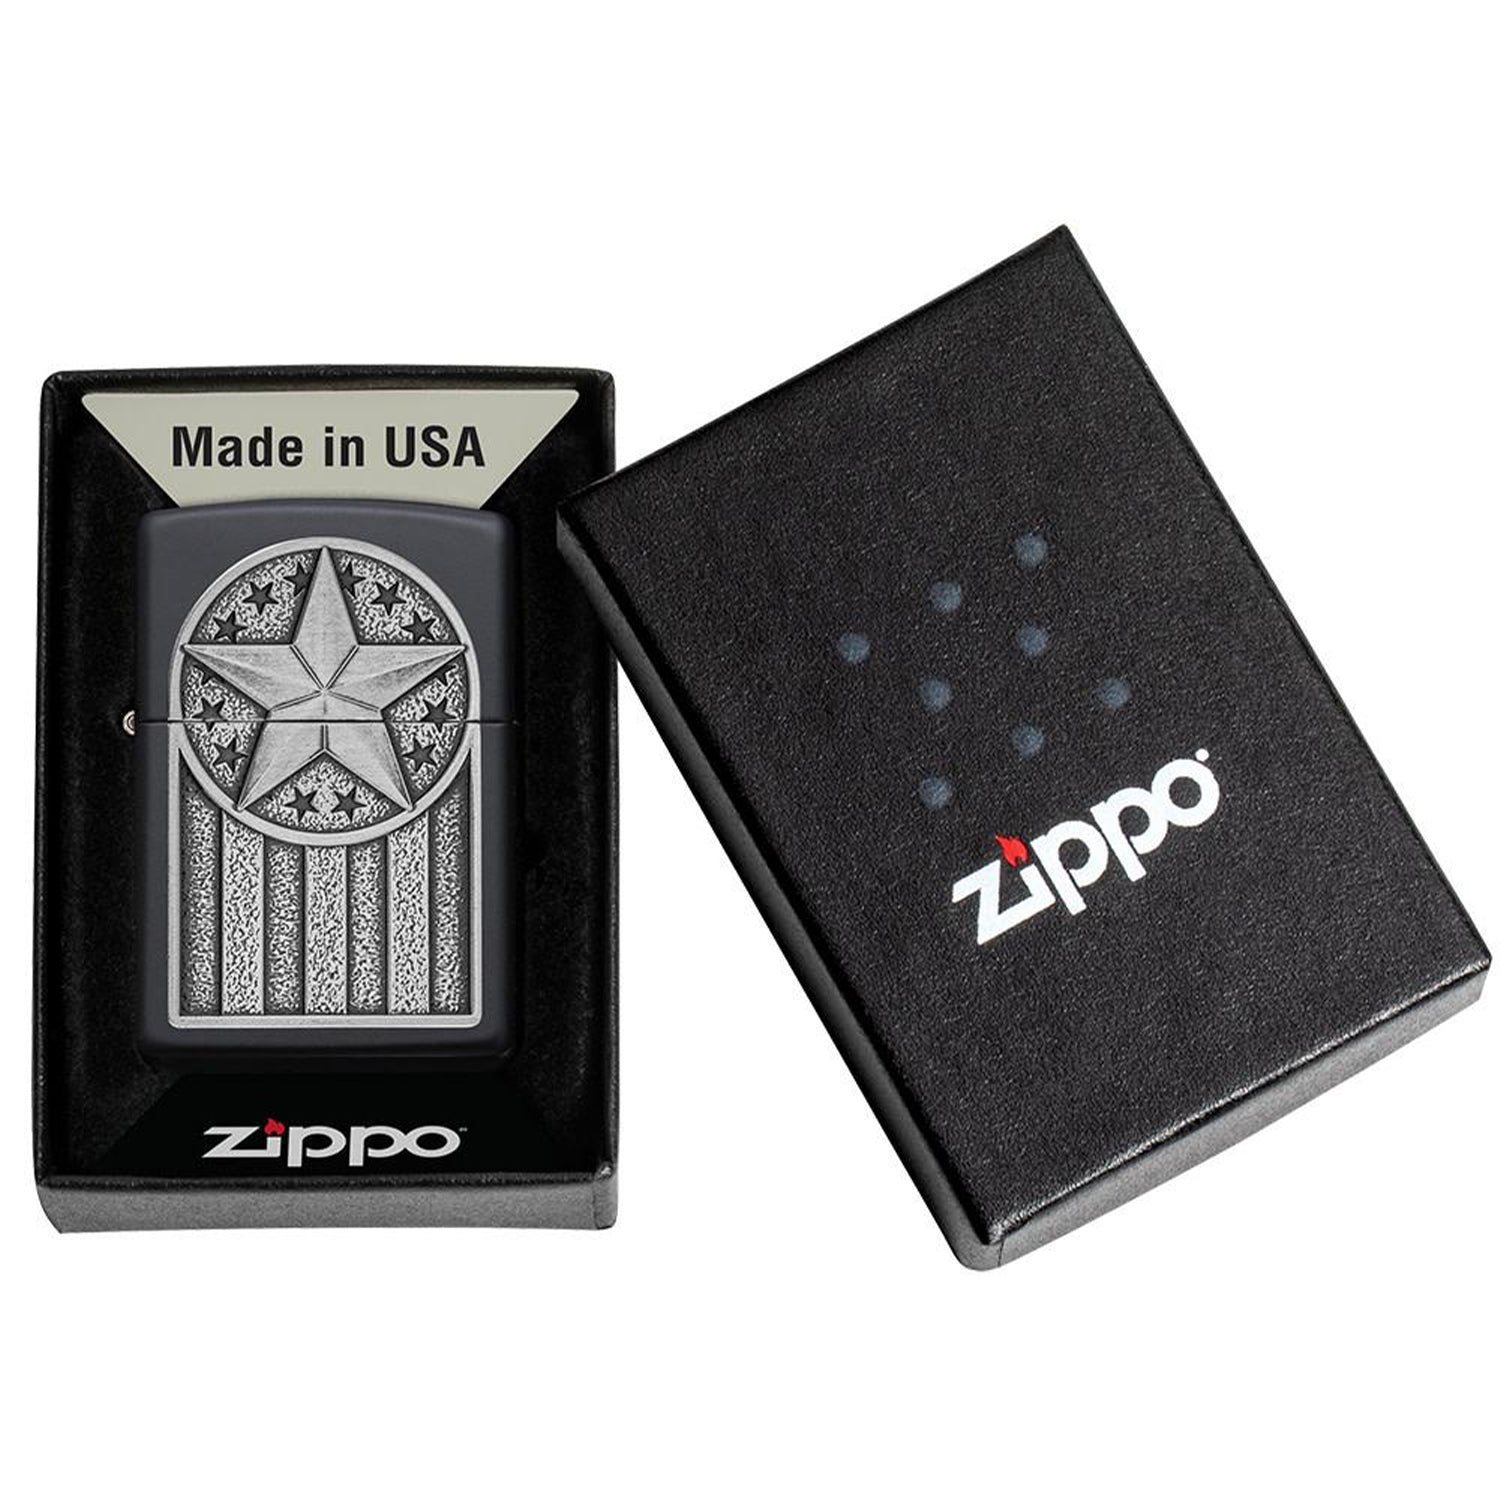 香港Zippo 打火機- 正品防風軍事街頭風格| 旺角Zippo門市- 美國製造